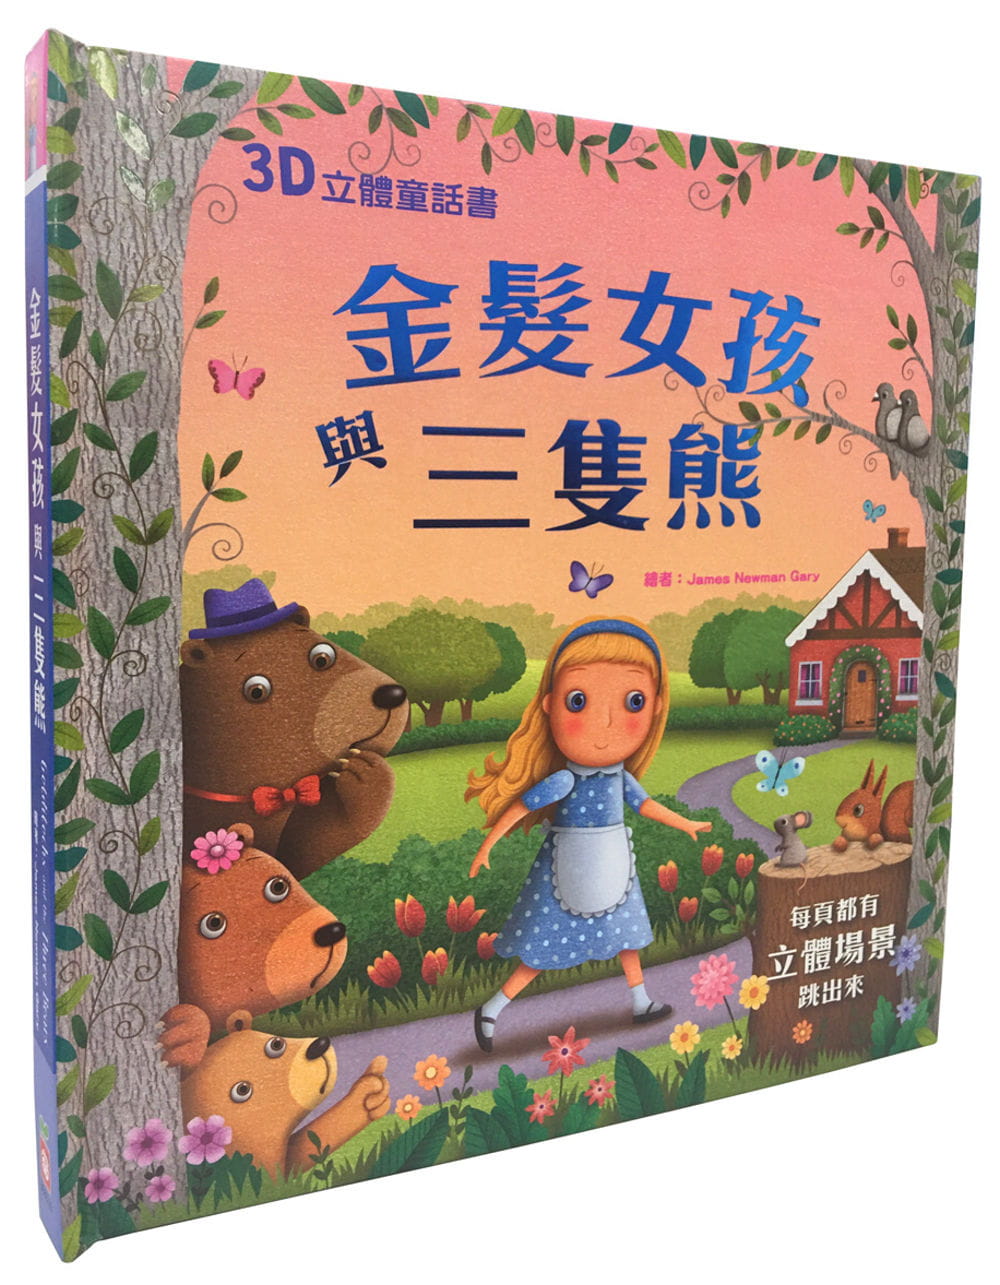 【预售】台版 3D立体童话书 金发女孩与三只熊 幼福 James Newman Gary 亲子共读睡前经典童话故事图画书益智儿童绘本书籍